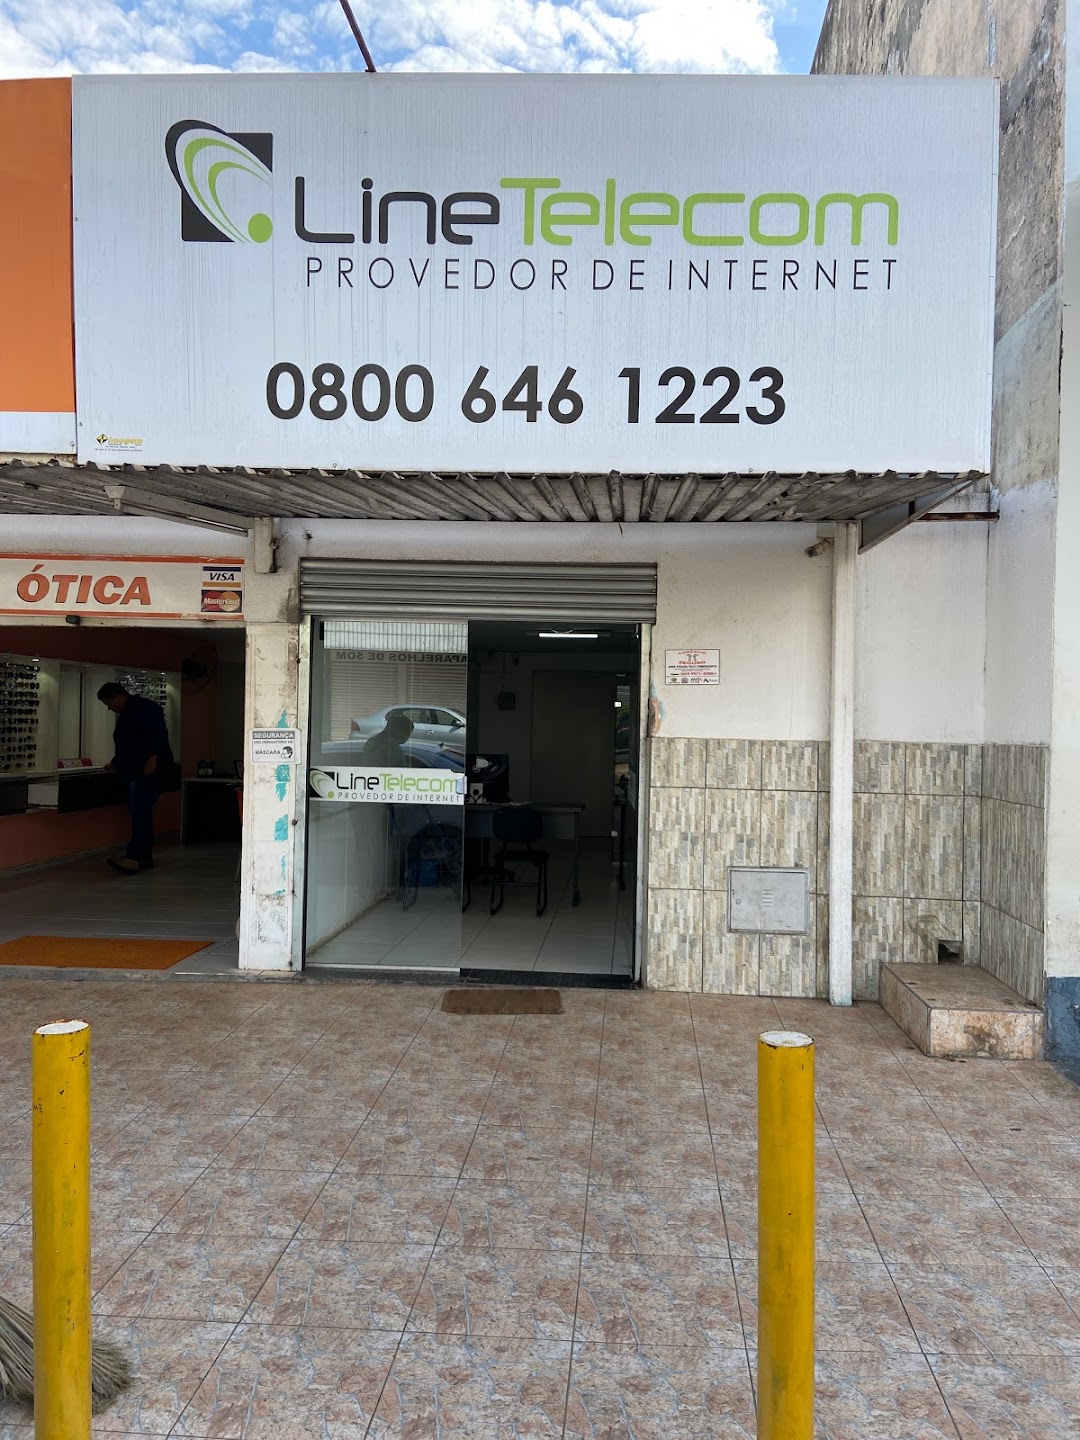 Line Telecom Provedor de Internet